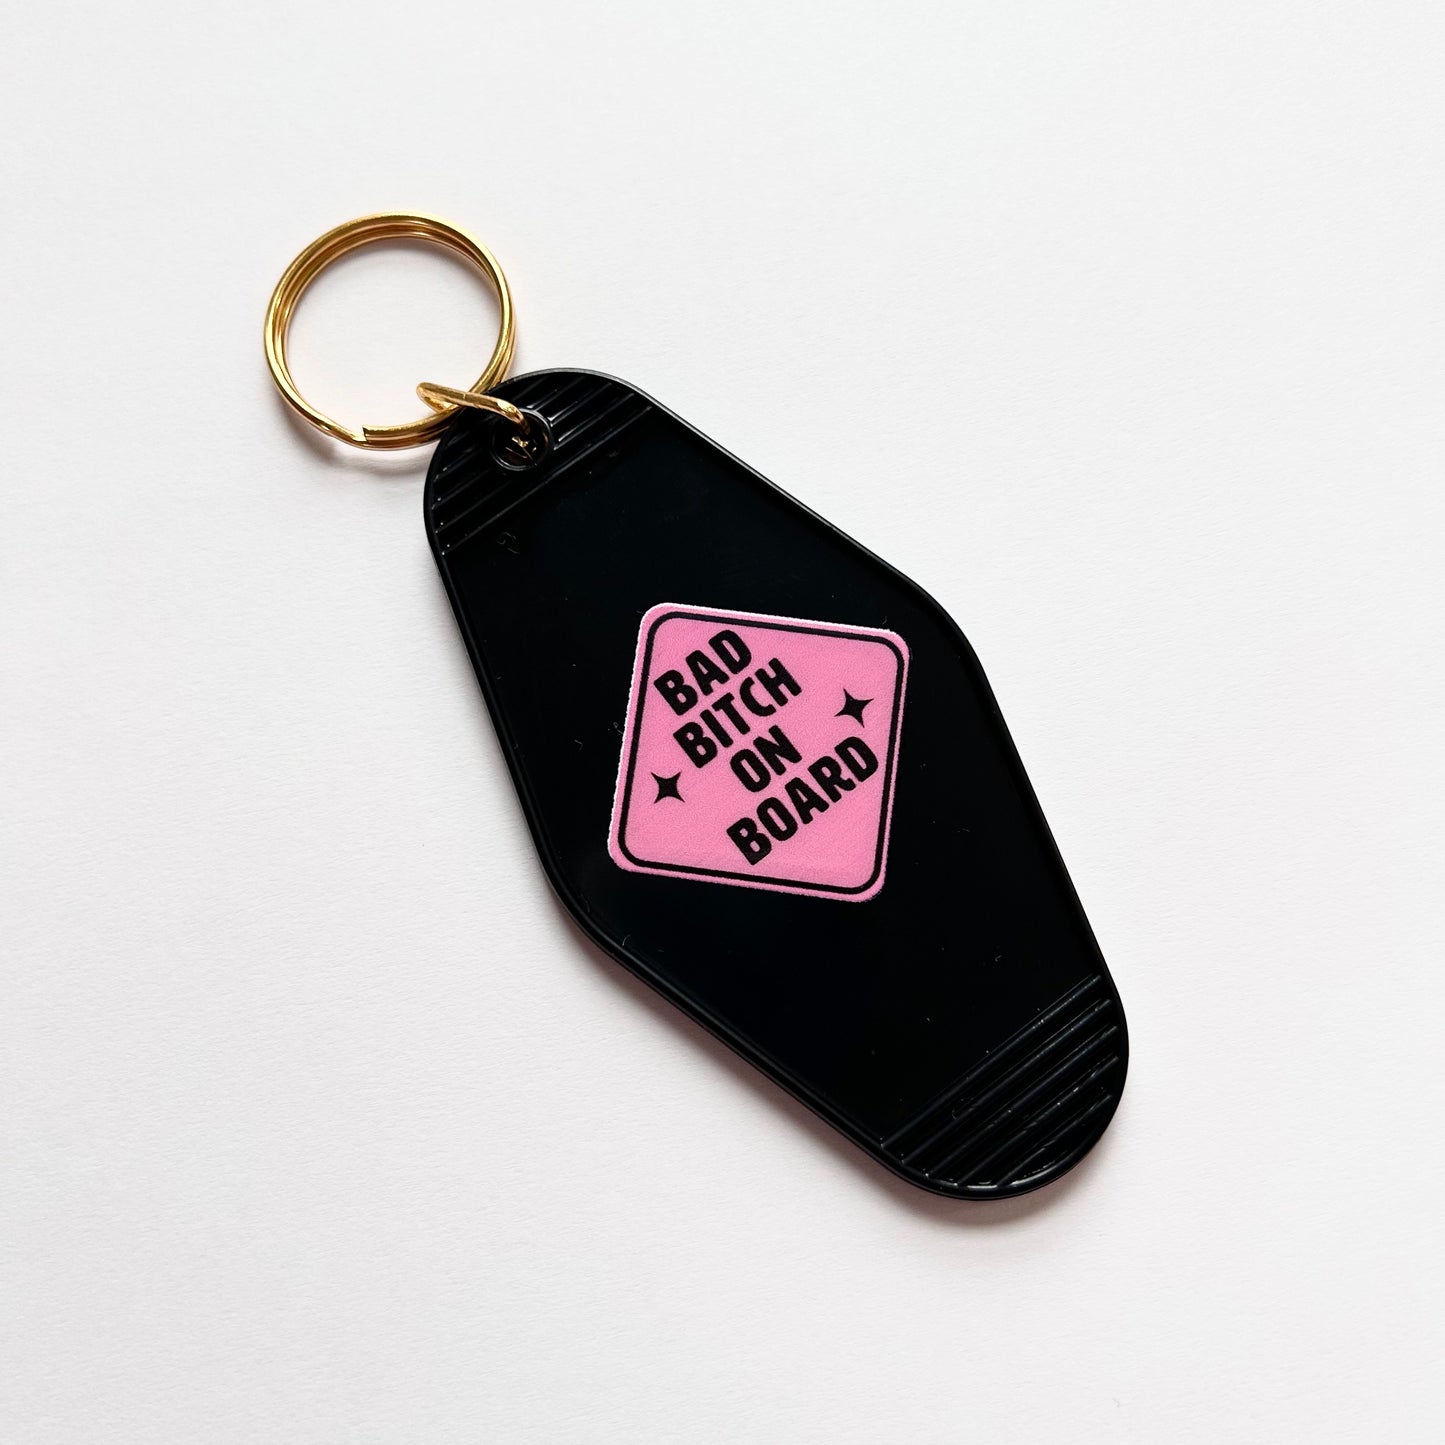 Bad Bitch on Board - Cute Pink Motel Keychain